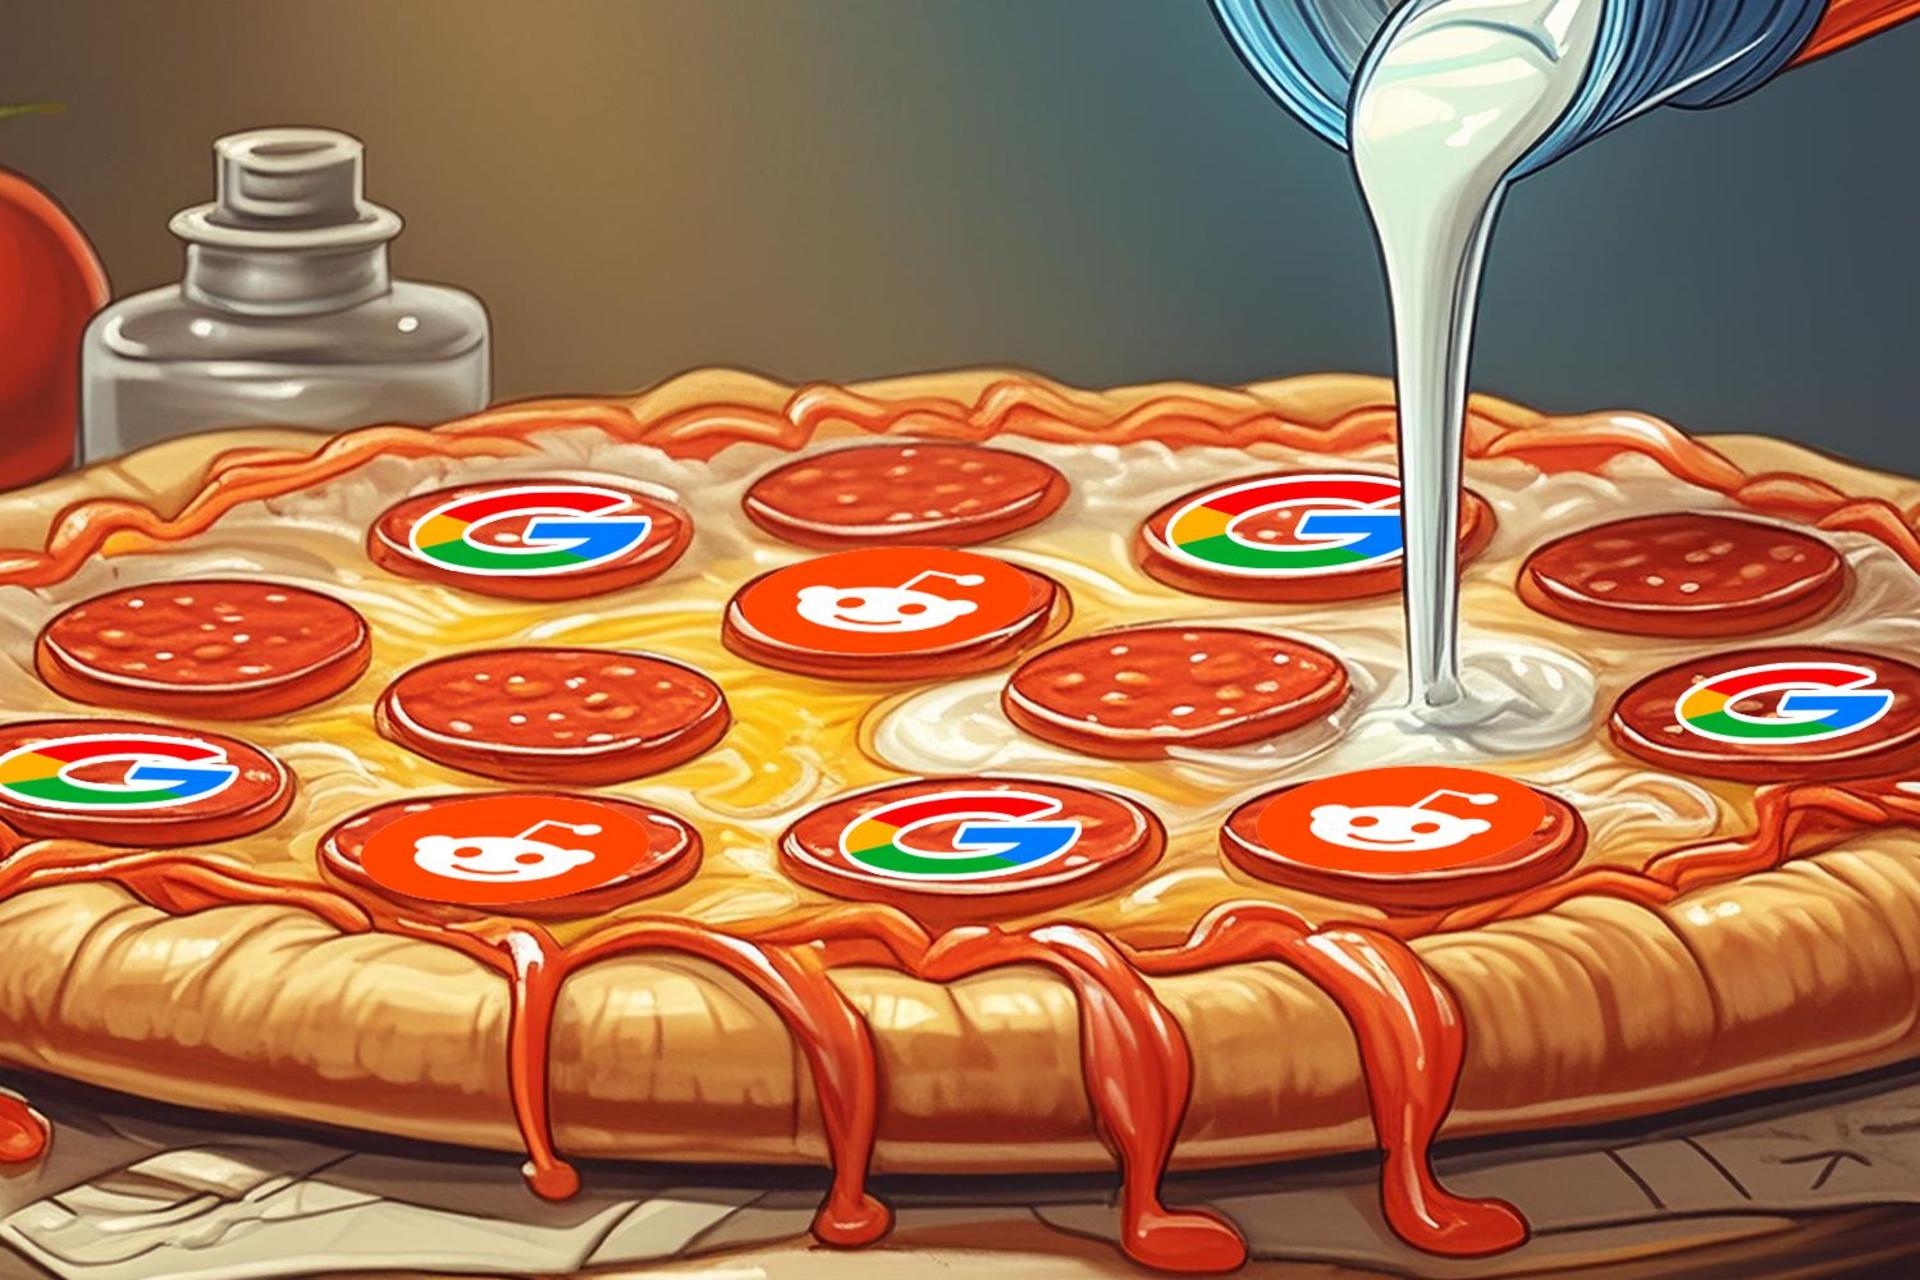 چسب روی پیتزا با لوگو گوگل و ردیت